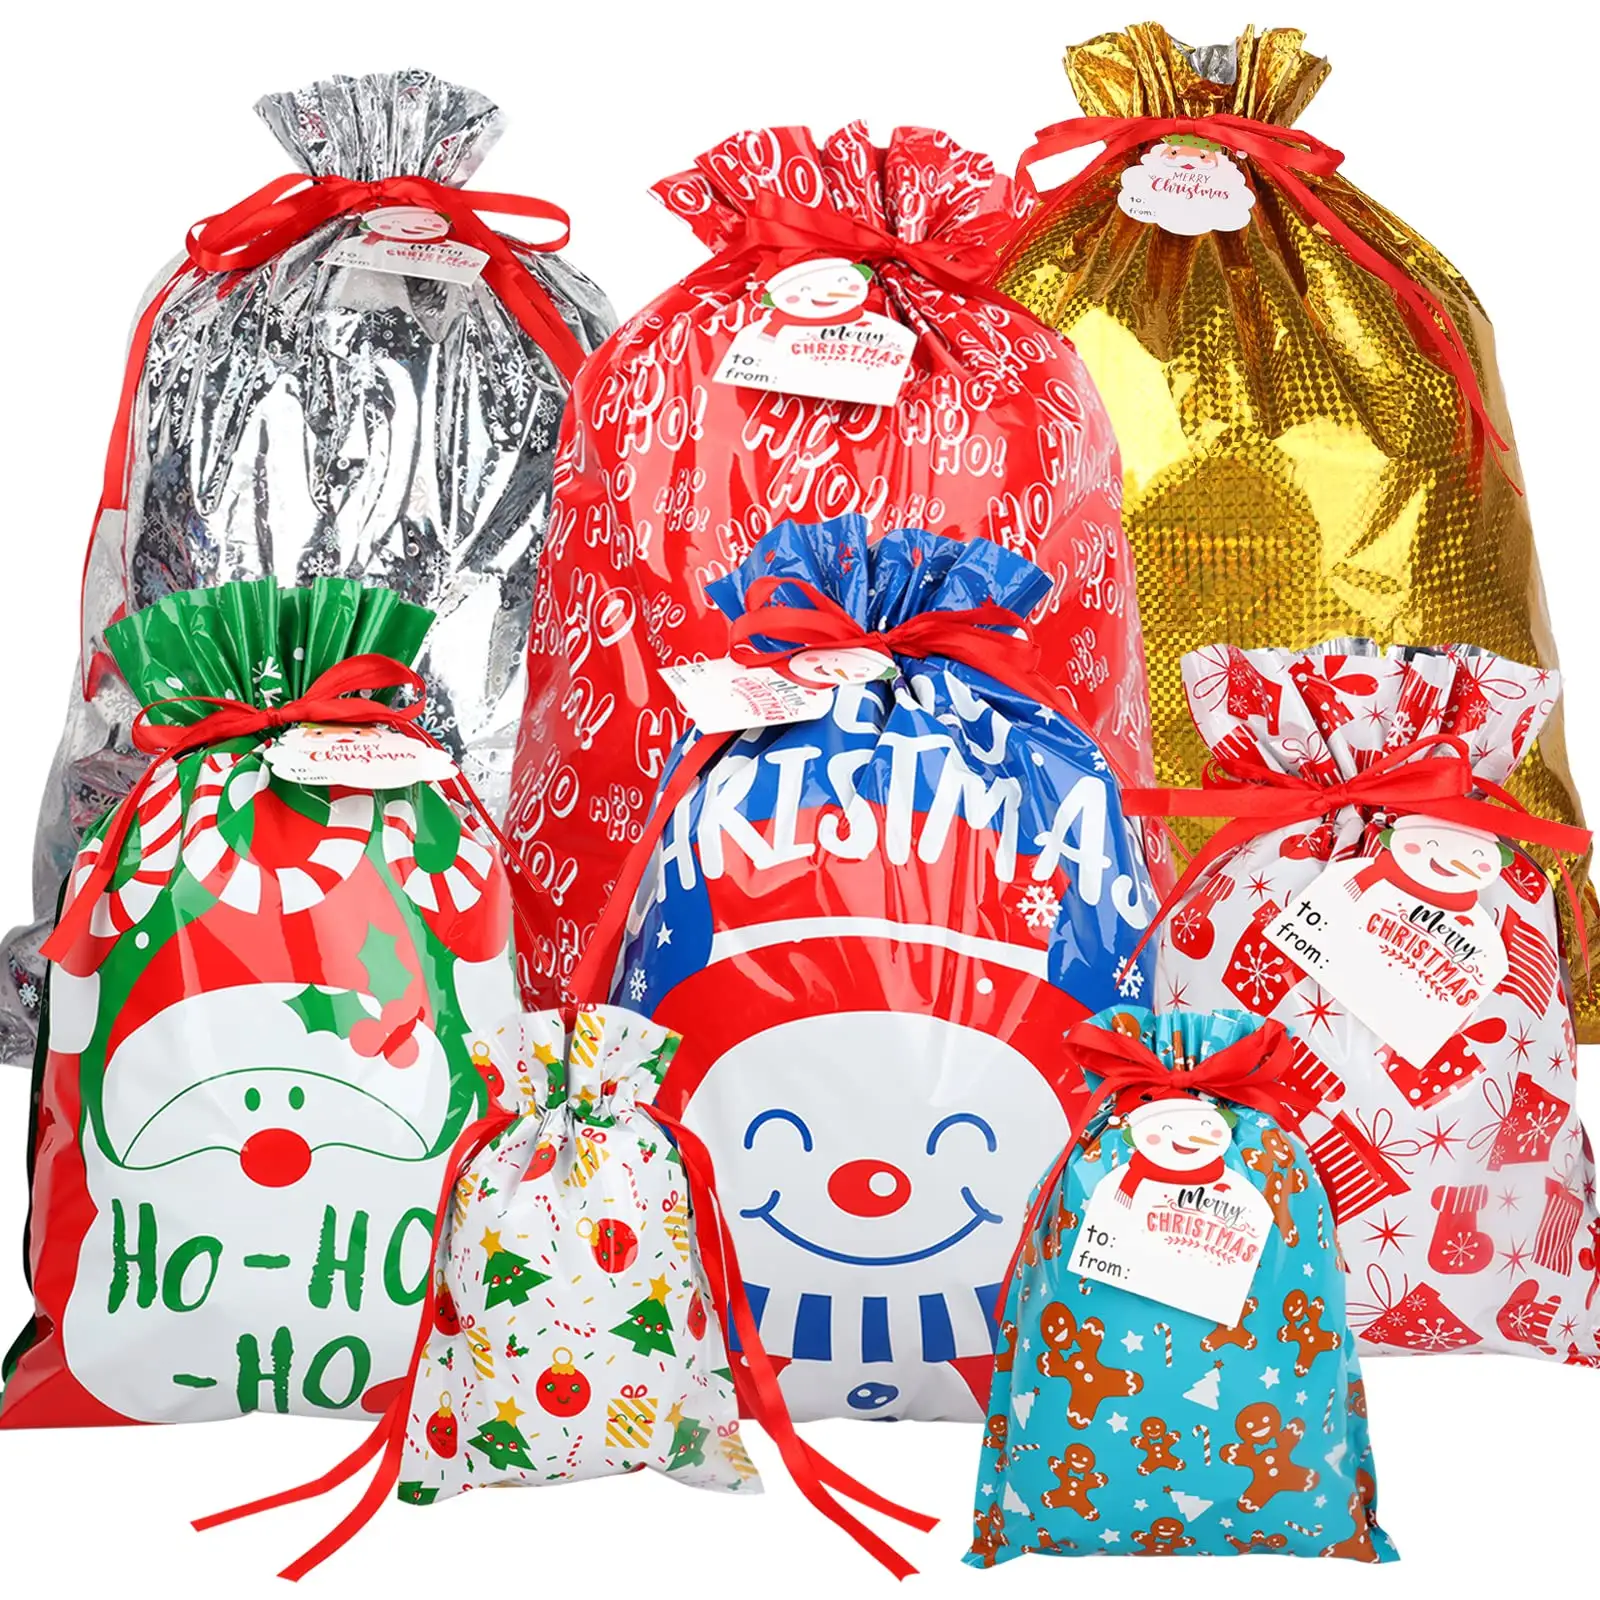 Bolsas de papel de aluminio con cordón para envolver regalos de Navidad, bolsas de regalo de Navidad